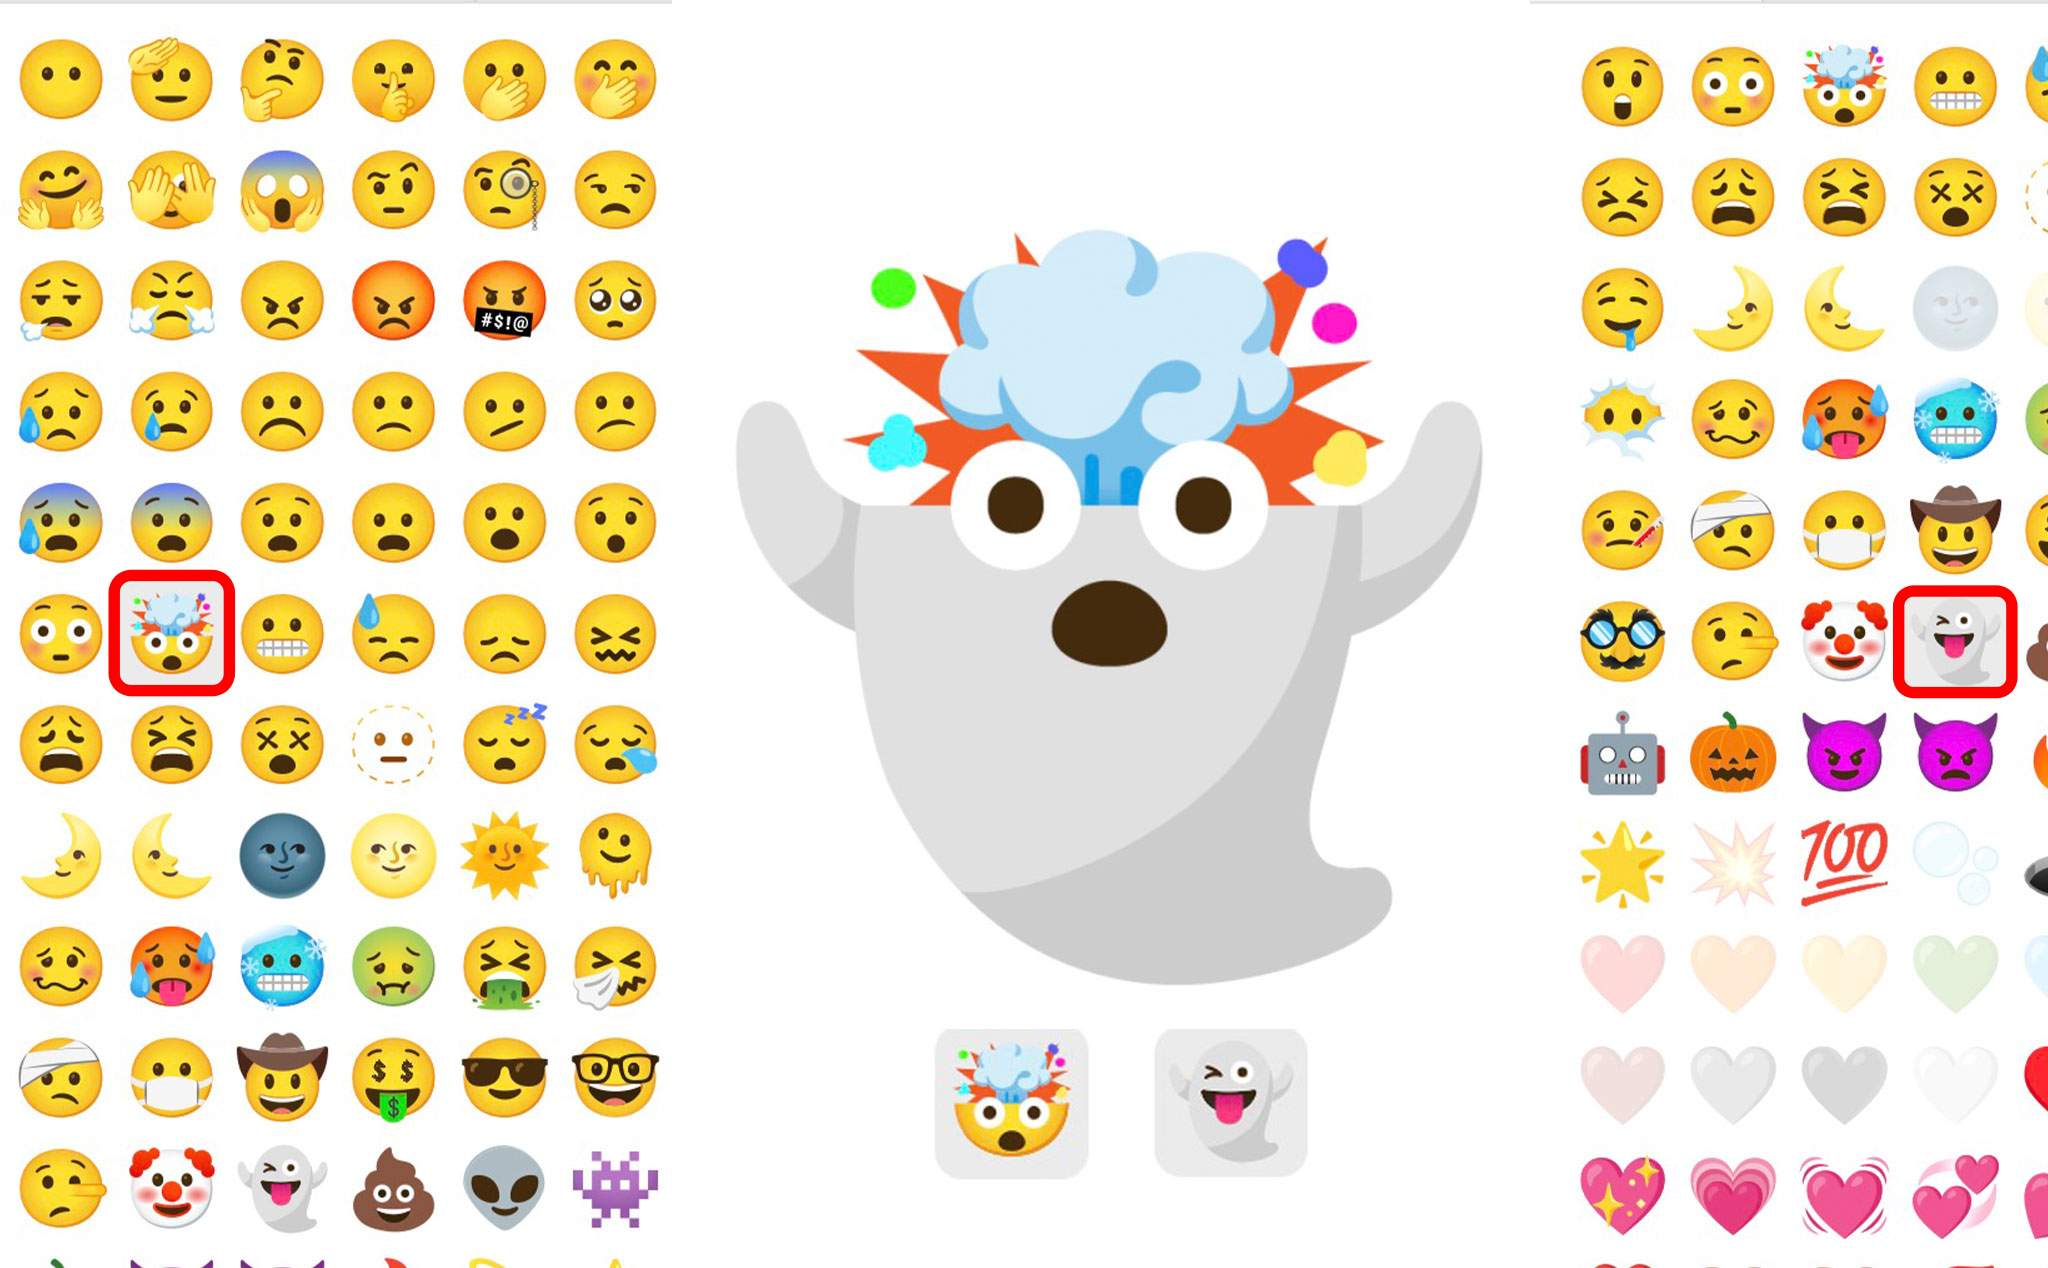 Thủ thuật Gboard: Ghép 2 emoji bất kỳ tạo ra emoji mới độc đáo